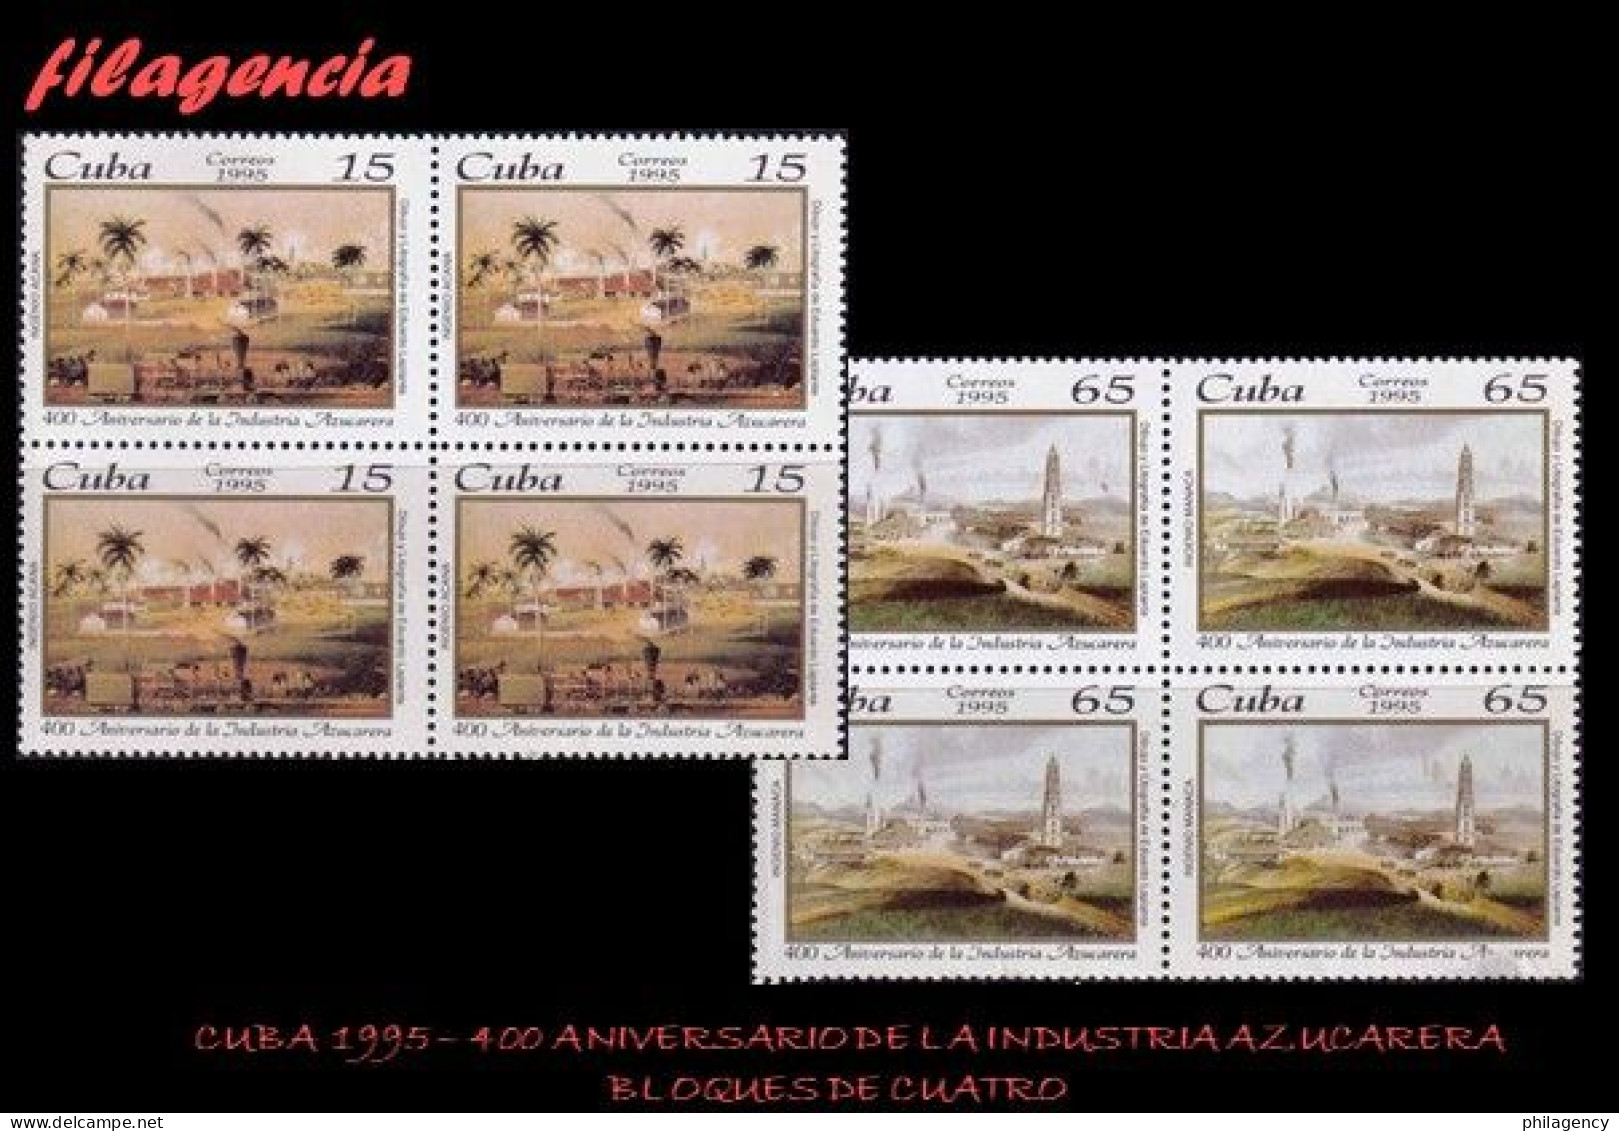 CUBA. BLOQUES DE CUATRO. 1995-15 IV CENTENARIO DE LA INDUSTRIA AZUCARERA EN CUBA - Nuevos